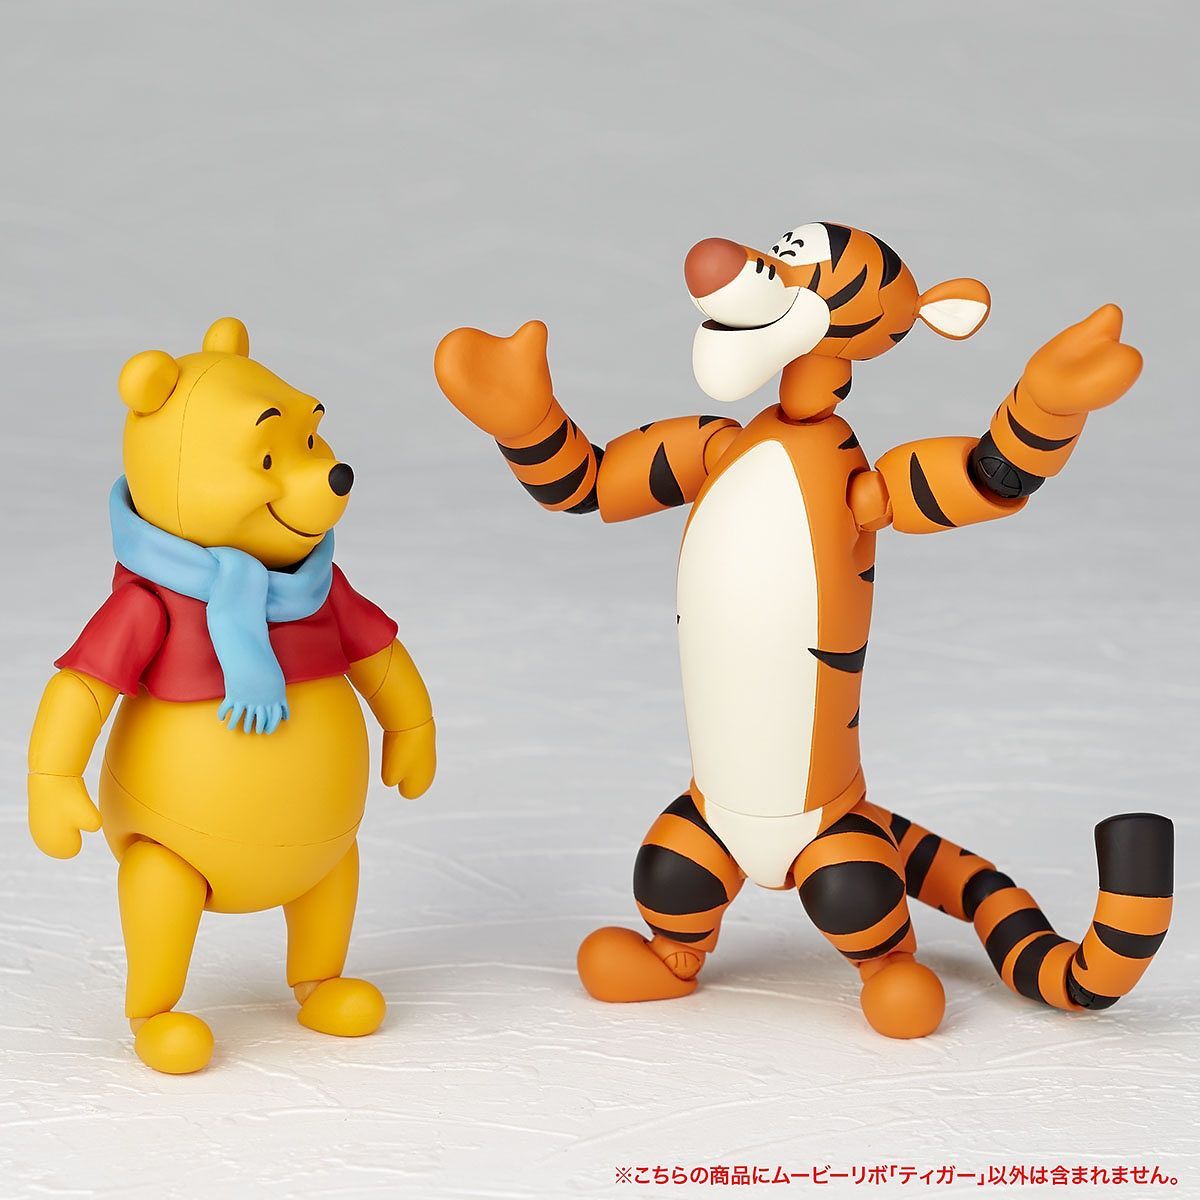 Kaiyodo - Figure Complex Movie Revo Series No. 012 - Winnie the Pooh - Tigger with Piglet